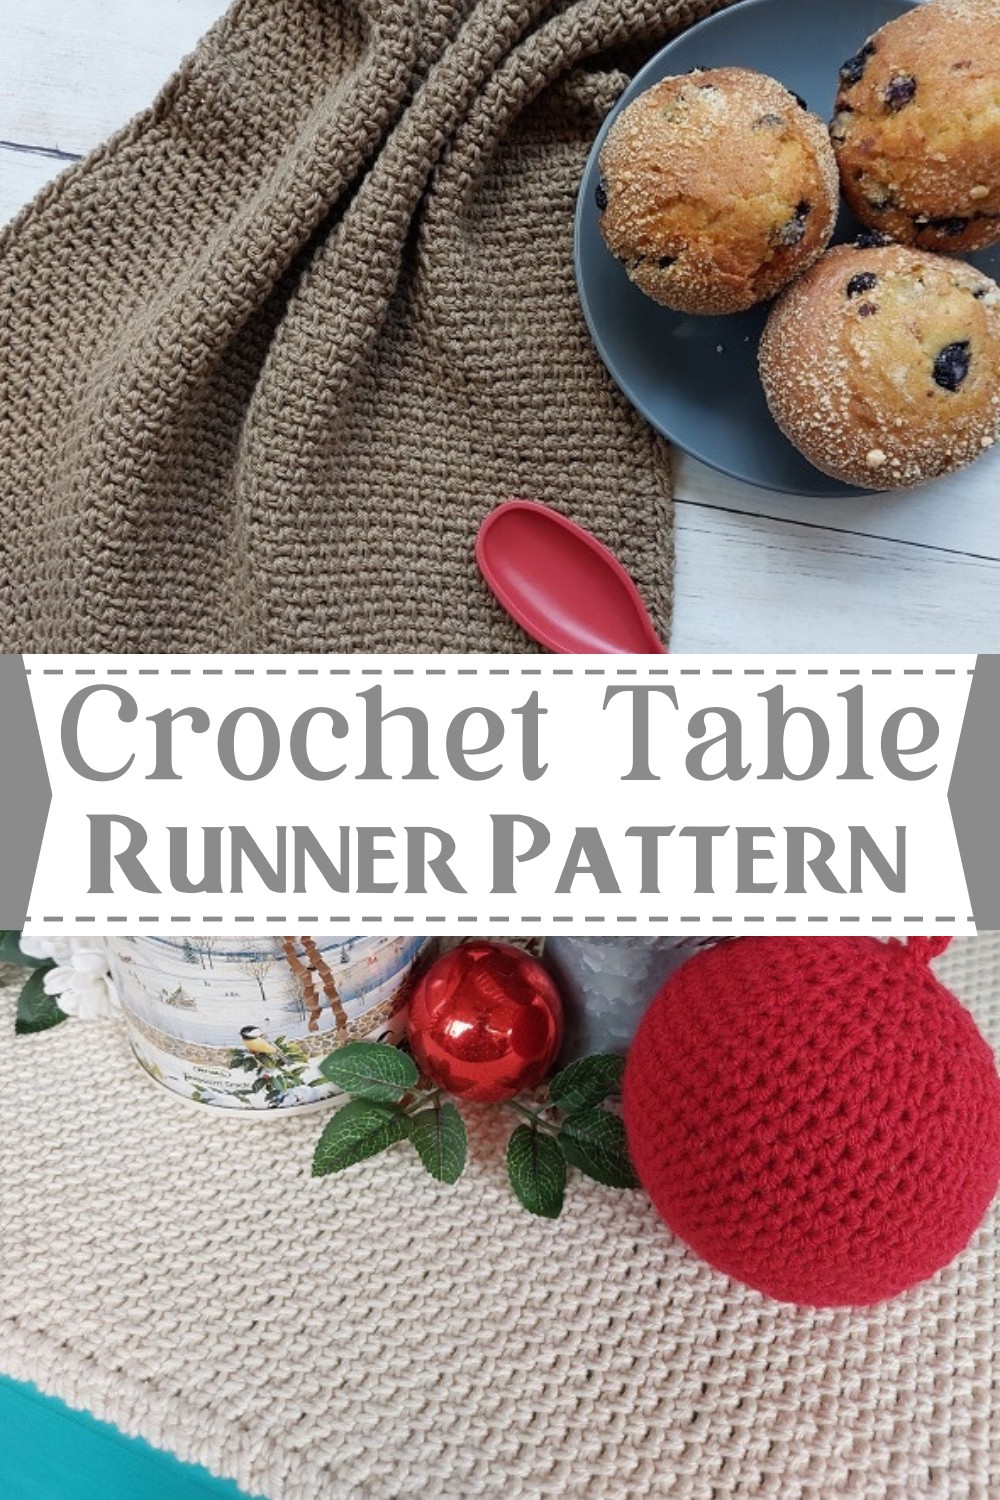 Crochet Table Runner Pattern Free